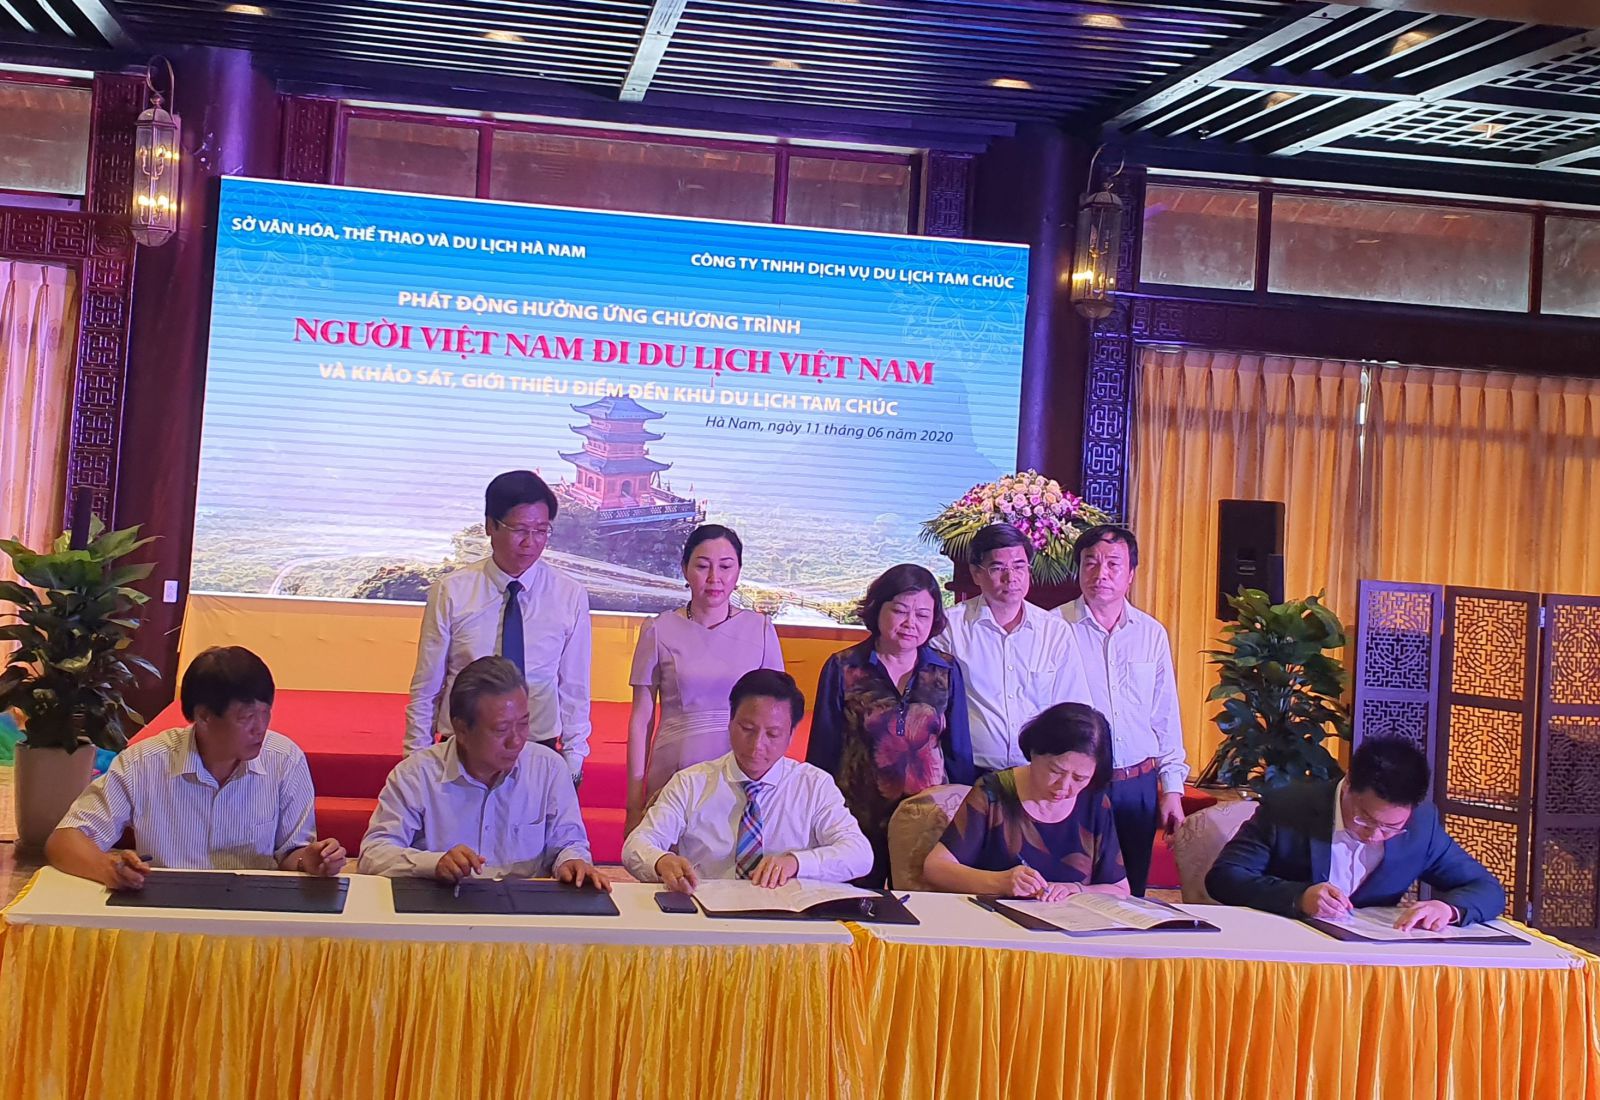 Các đơn vị ký cam kết hỗ trợ cung cấp thông tin và dịch vụ nhằm hưởng ứng Chương trình kích cầu du lịch “Người Việt Nam đi du lịch Việt Nam” của tỉnh Hà Nam